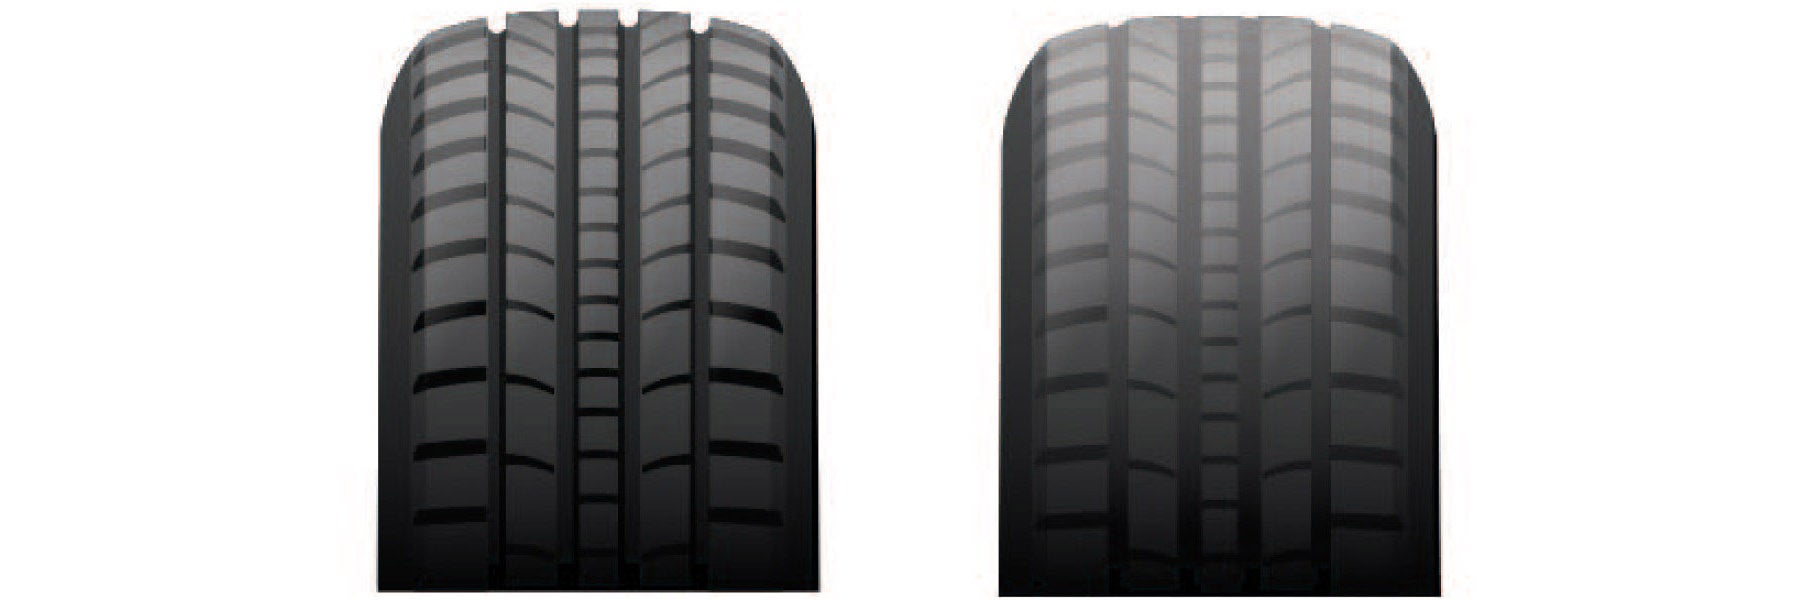 Tire tread depth comparison at Deland Kia in DeLand FL